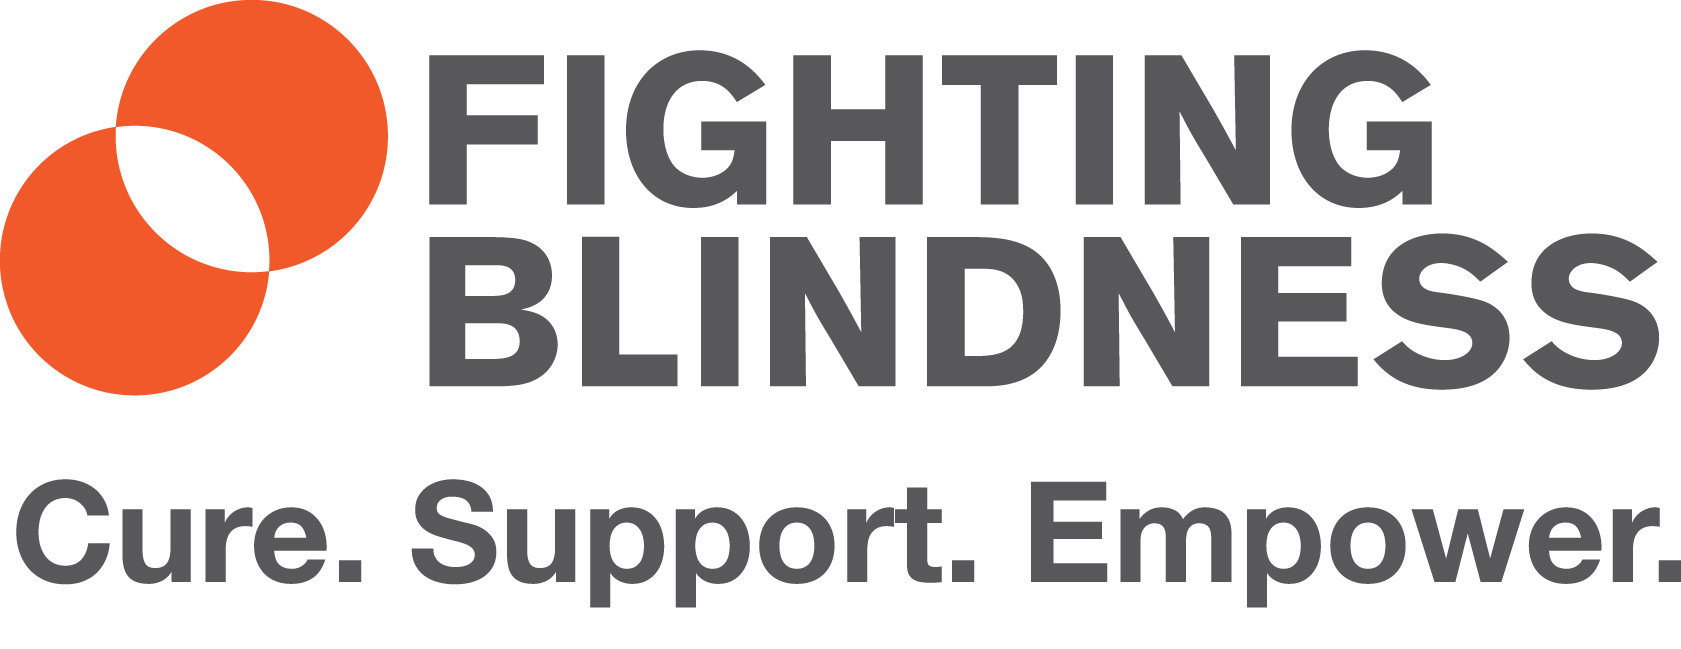 Fighting Blindness logo